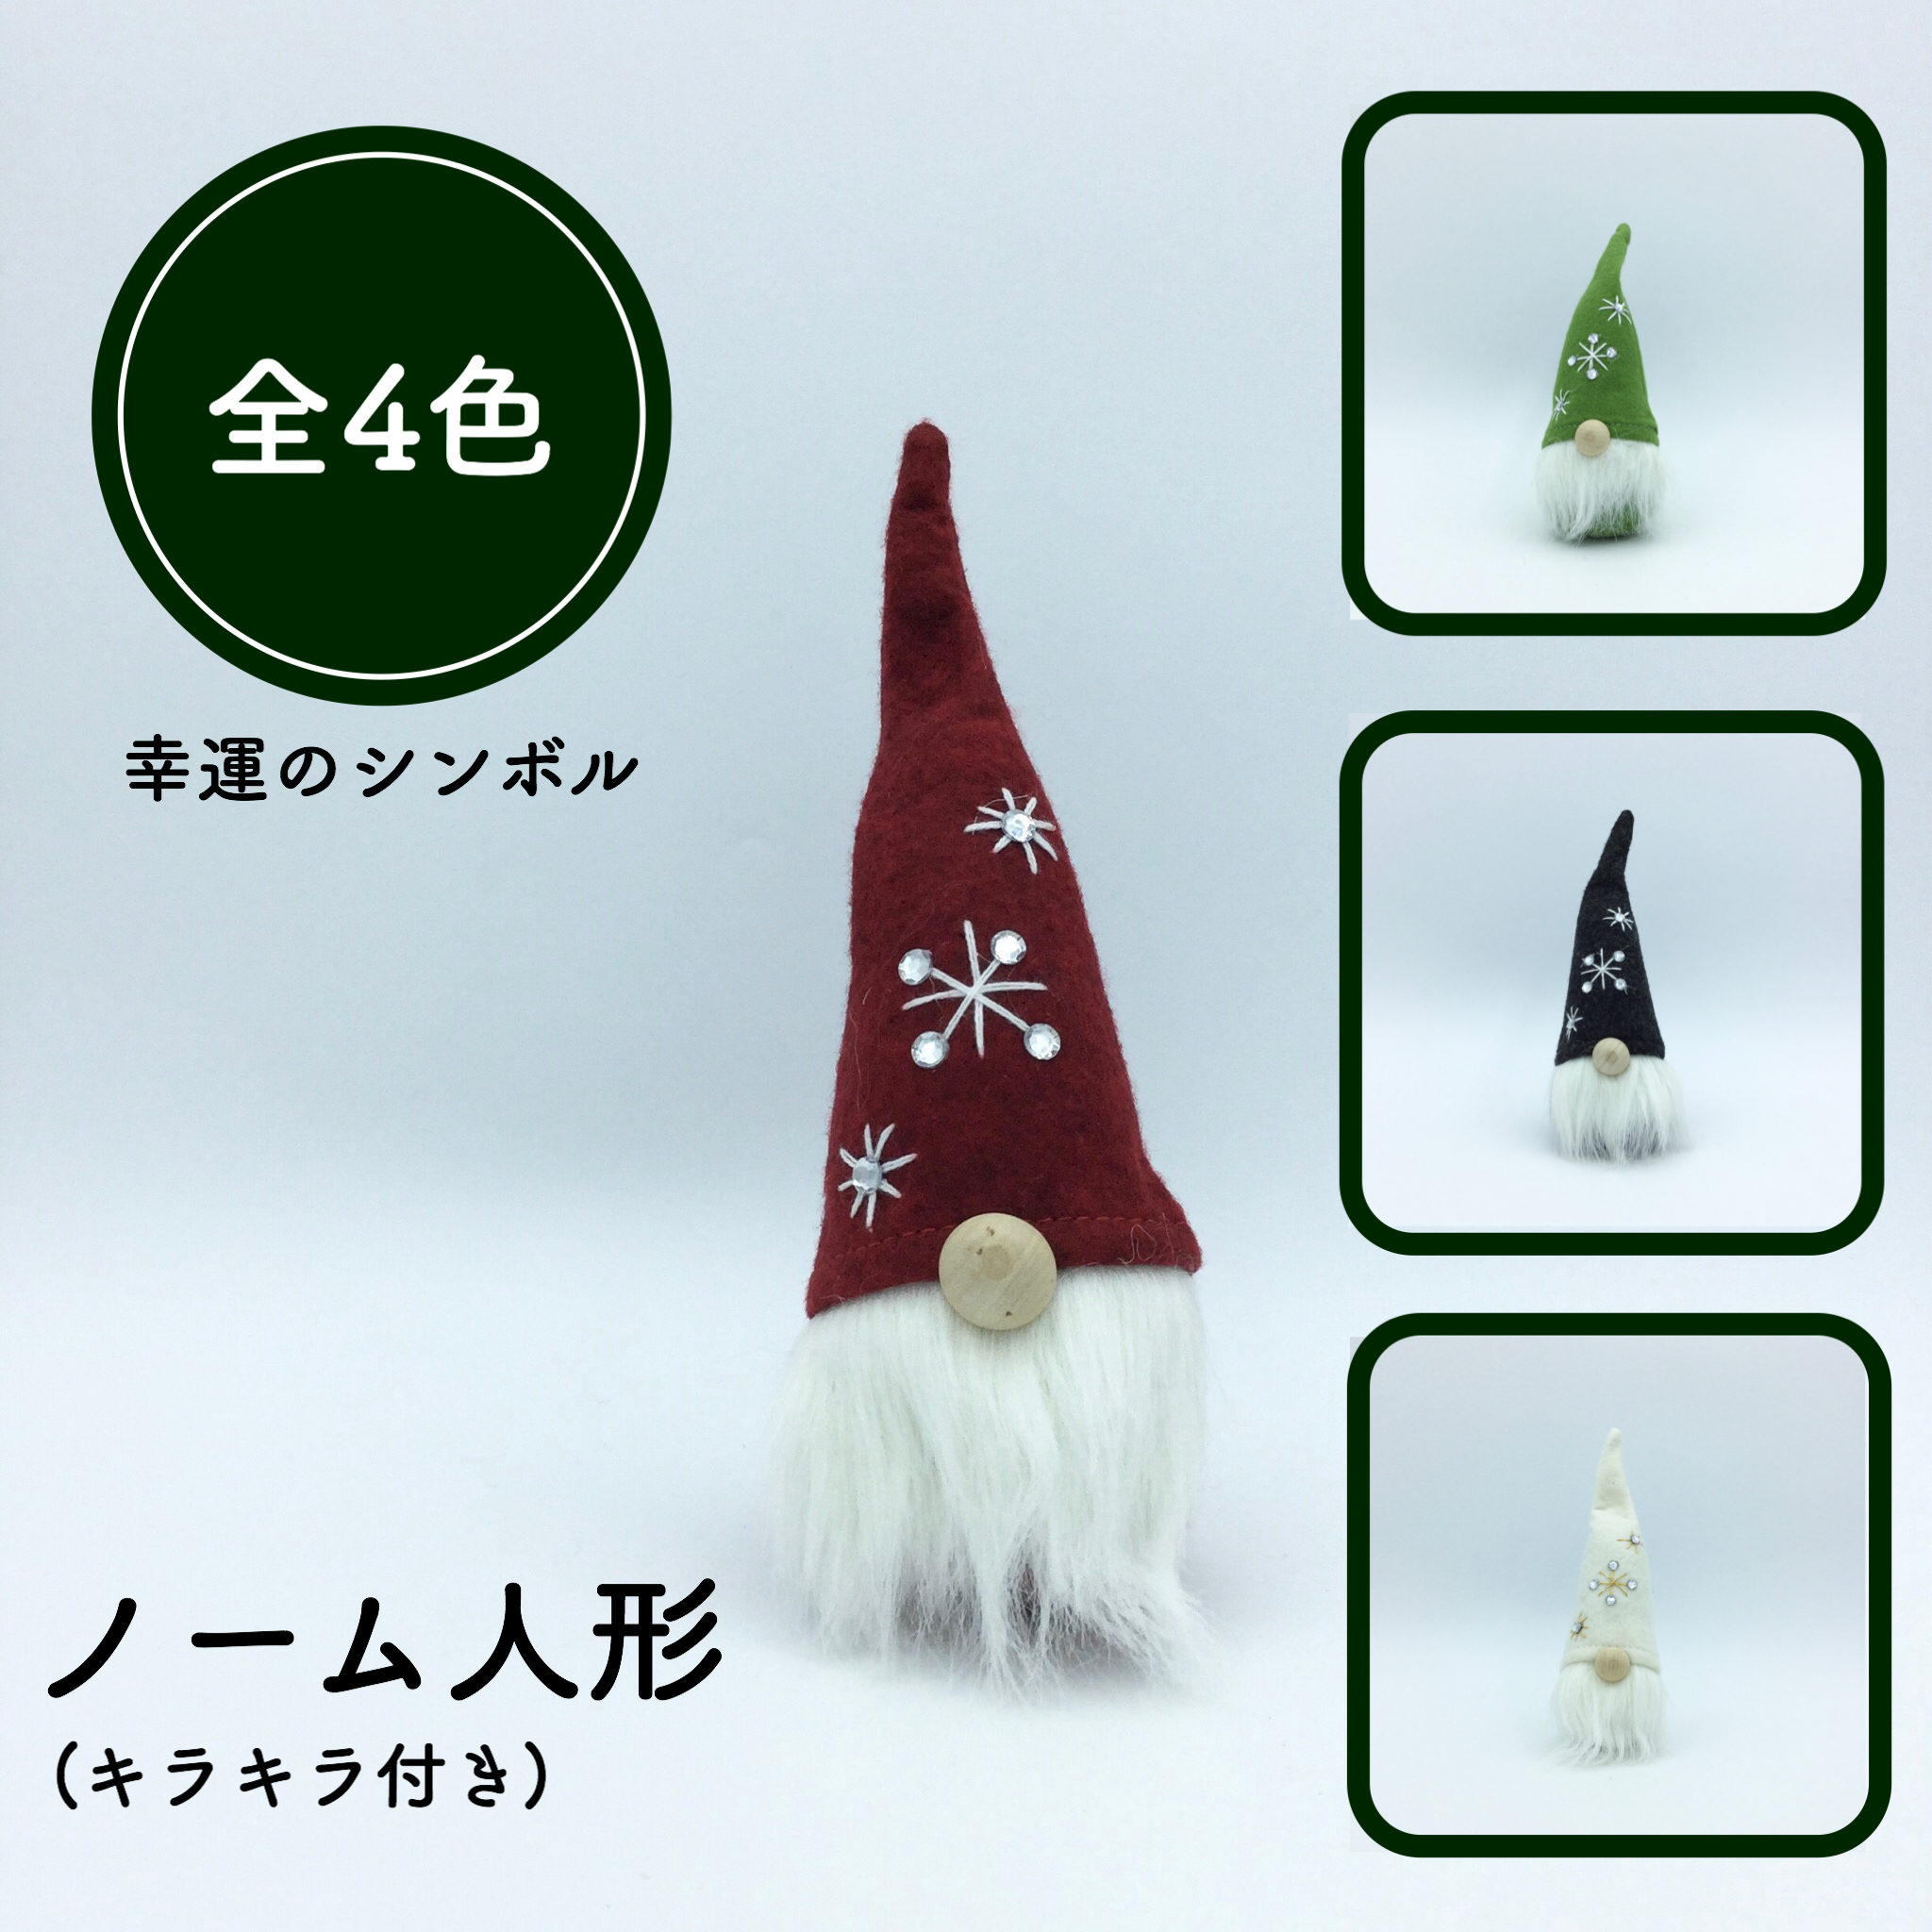 ノーム人形 キラキラ付き Christmas Land Okinawa